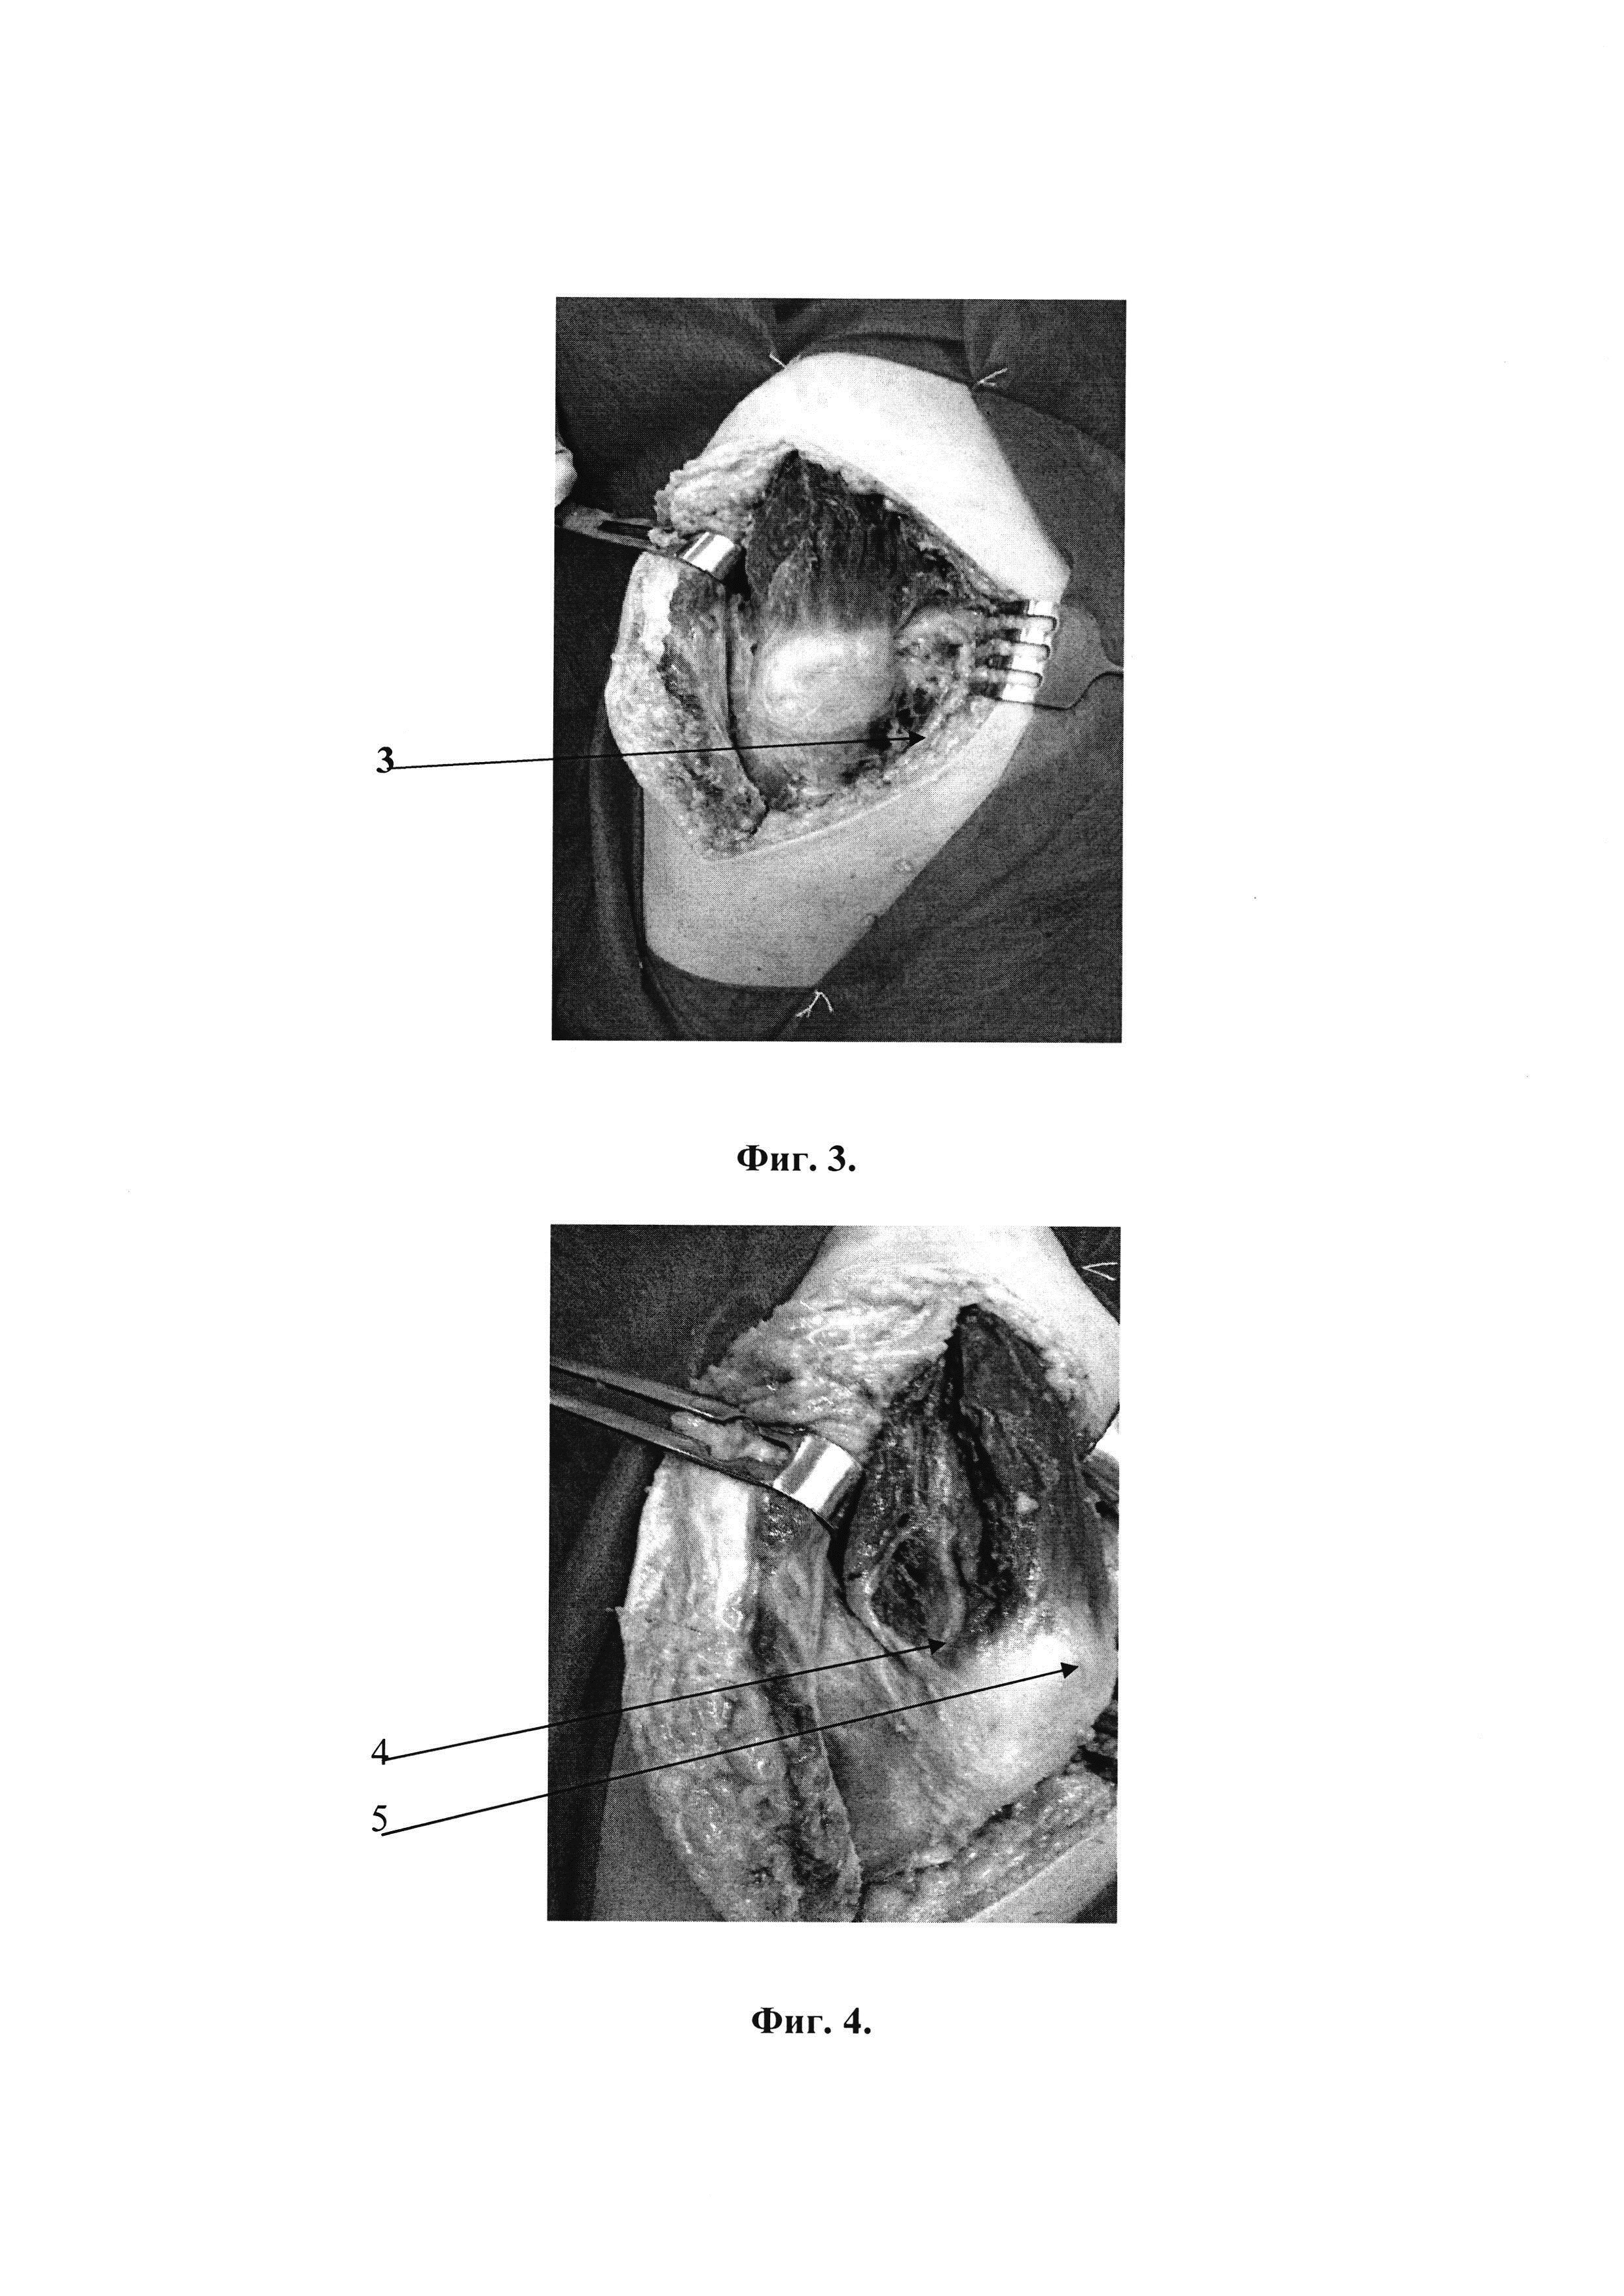 Способ экспериментального хирургического доступа к тазобедренному суставу при чрезвертлужных переломах костей таза